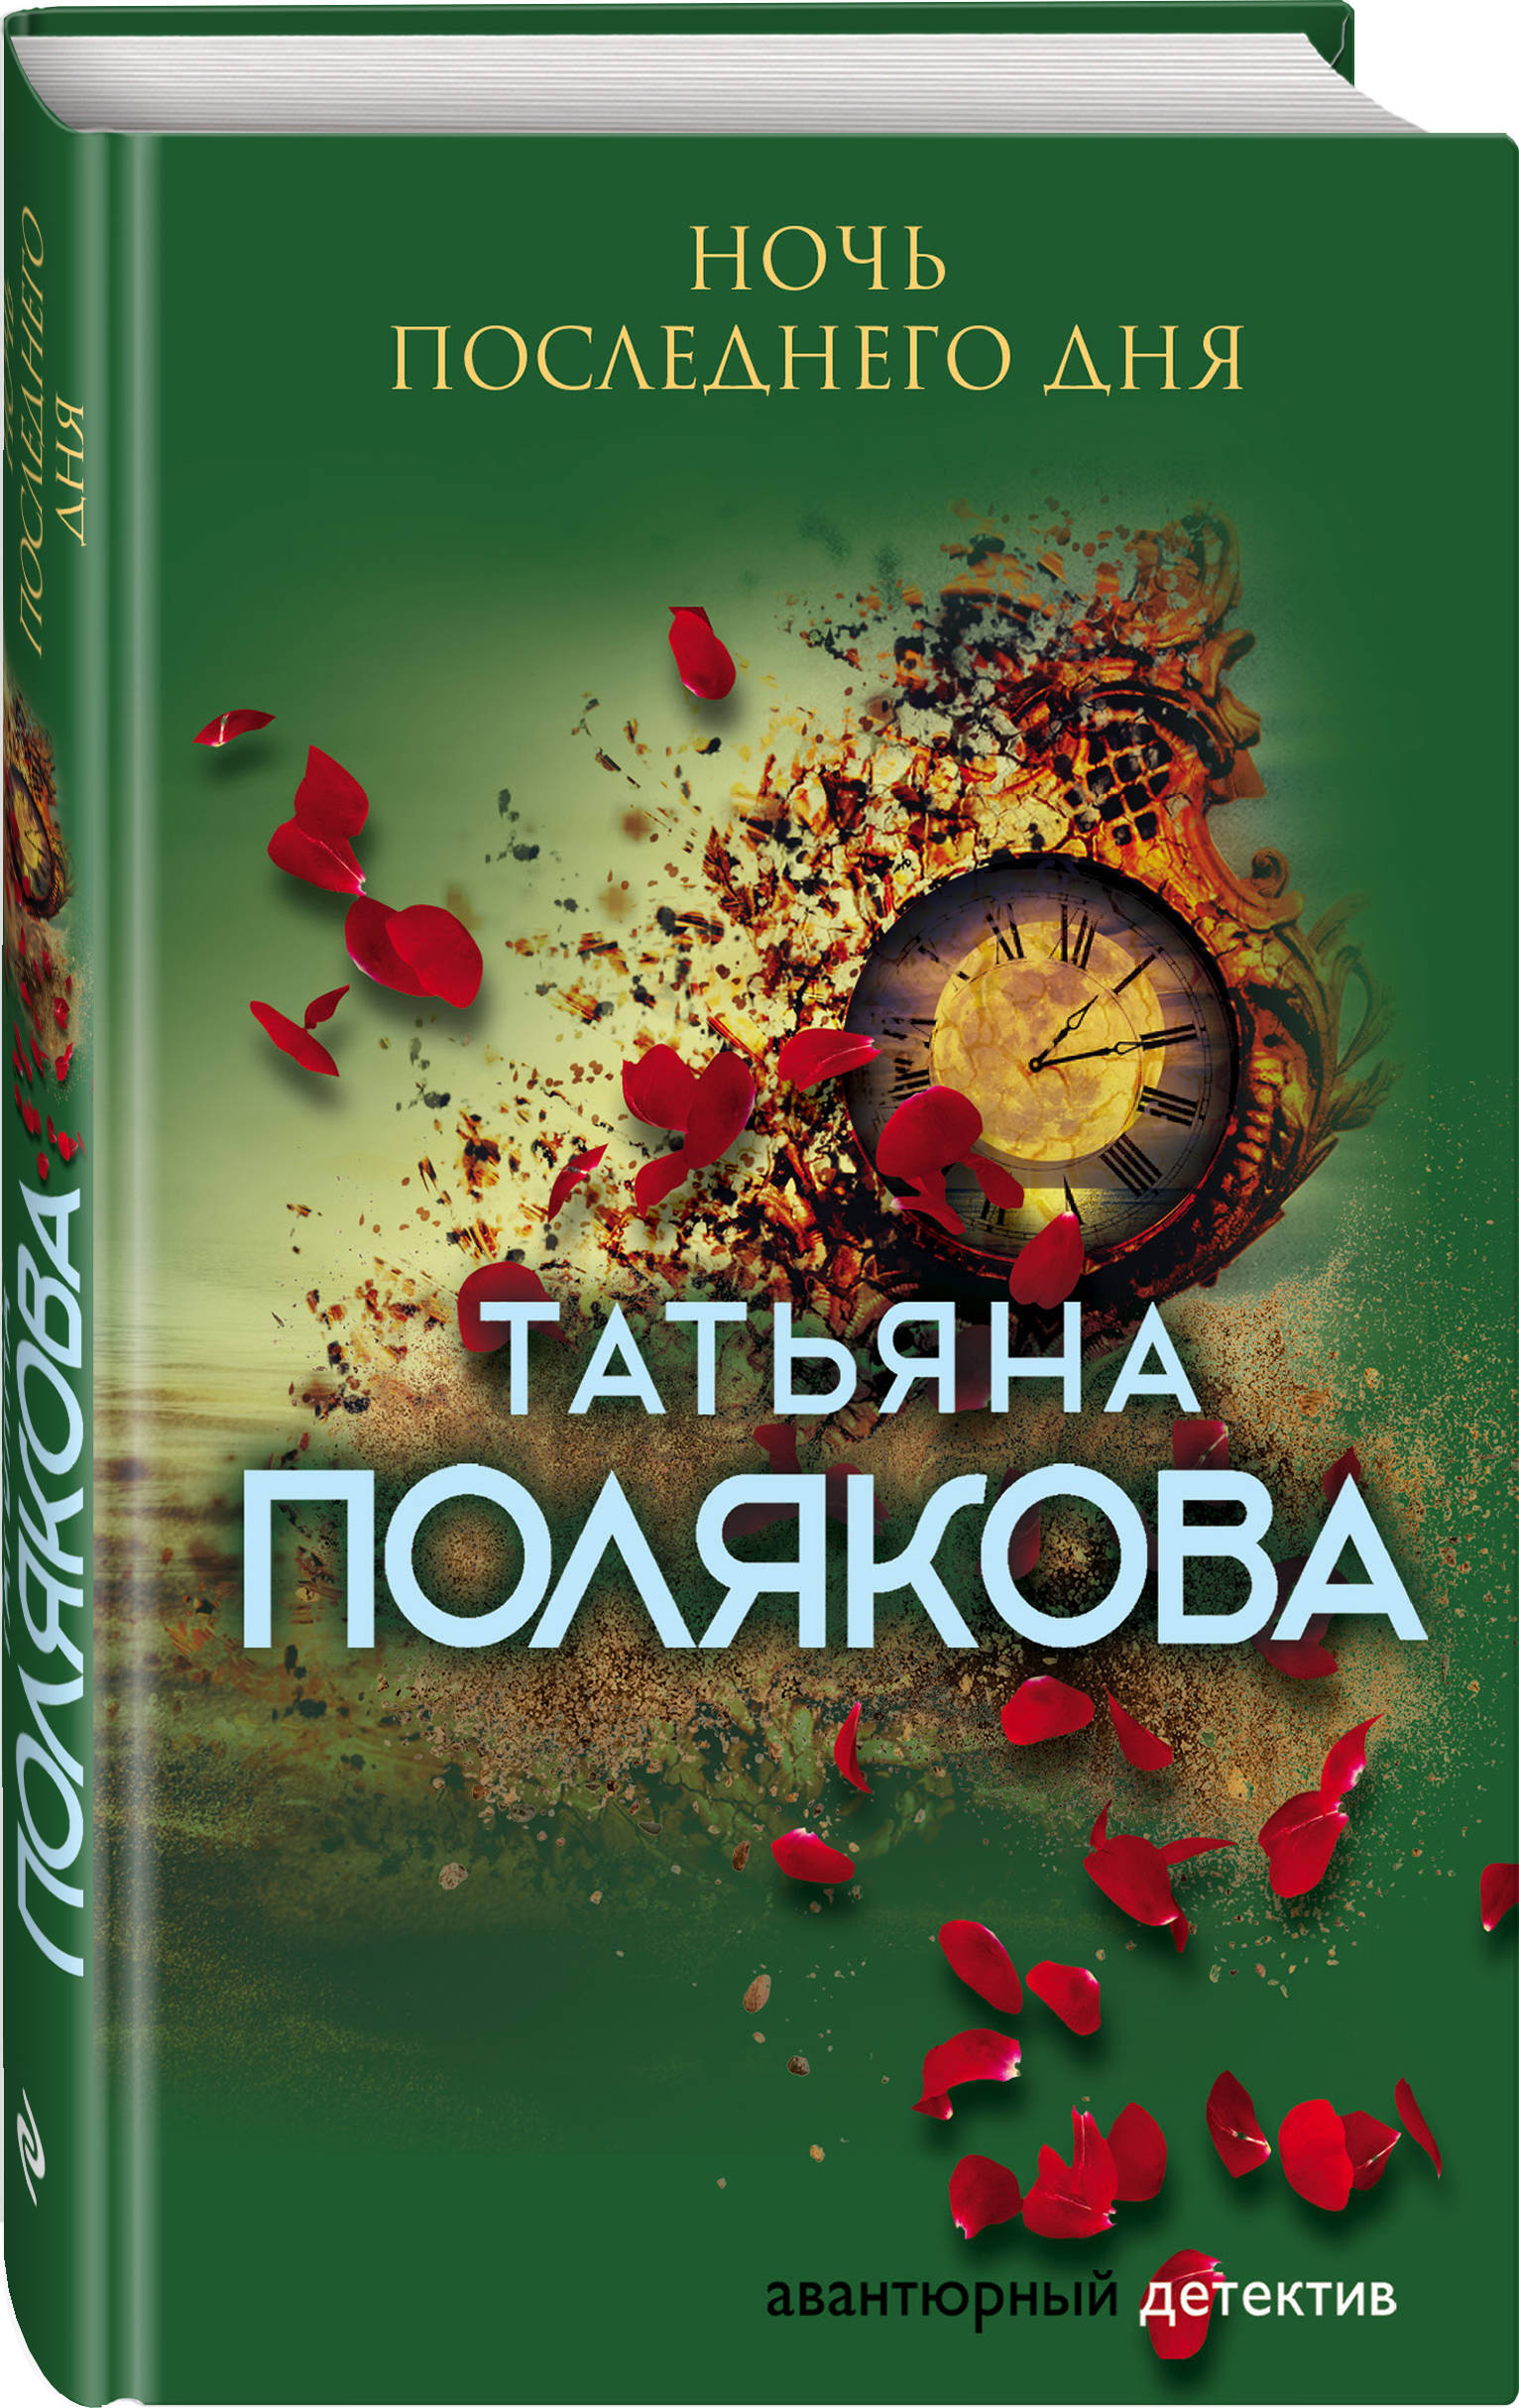 Книги т поляковой. Полякова книги. Последняя книга Татьяны Поляковой.